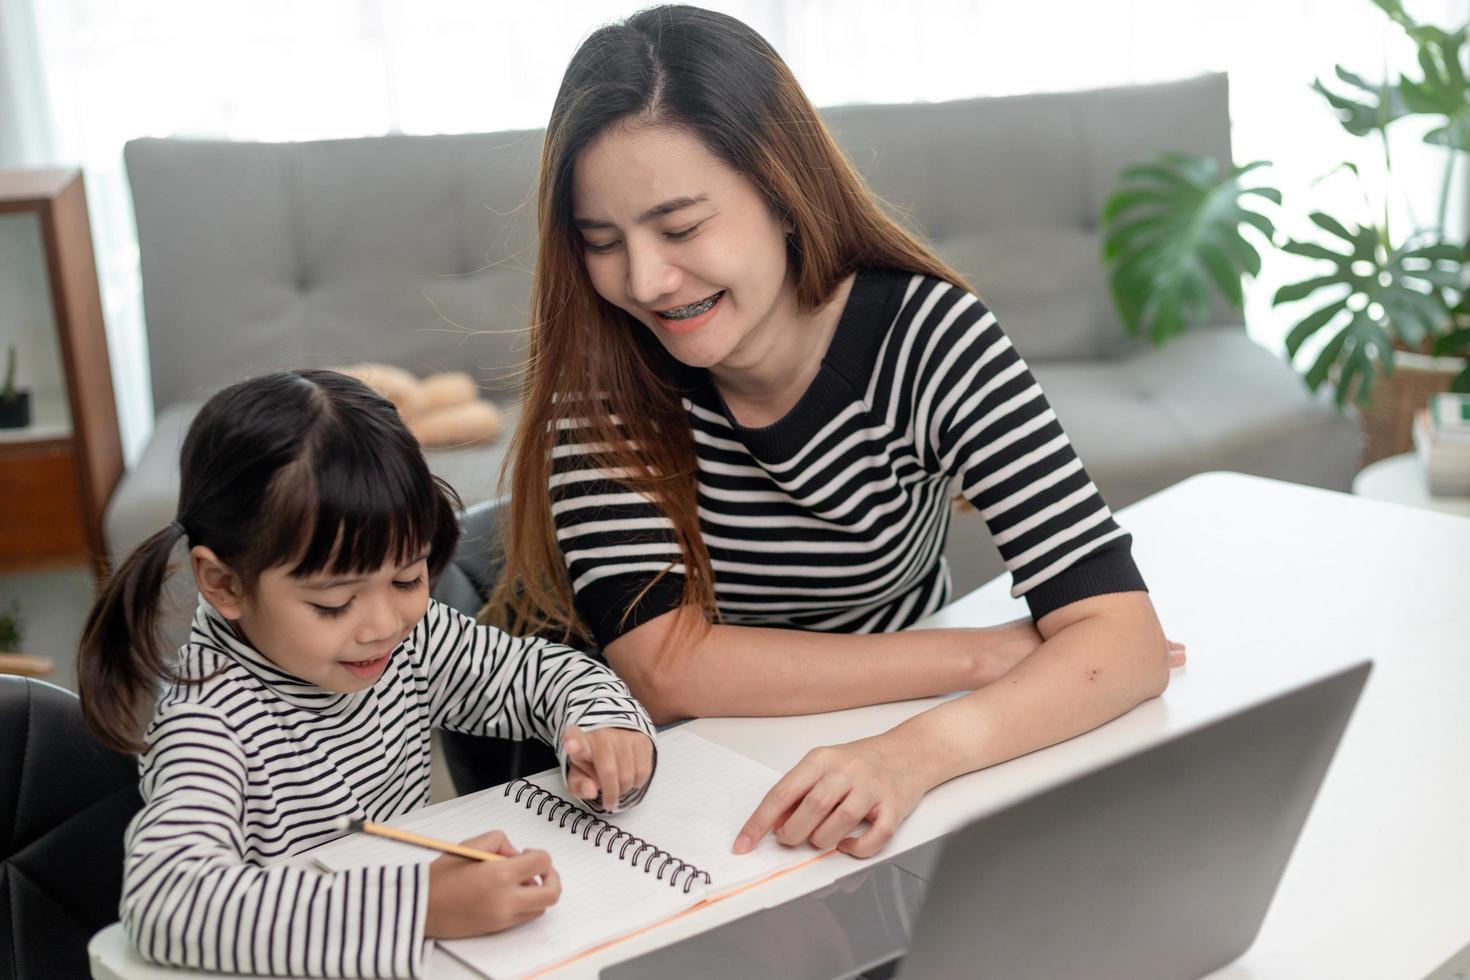 garotinha asiática aprendendo aula on-line em casa com a mãe. criança pré-escolar usa laptop para fazer lição de casa, ensino em casa do professor da escola pela internet remota digital com apoio da mãe. foto